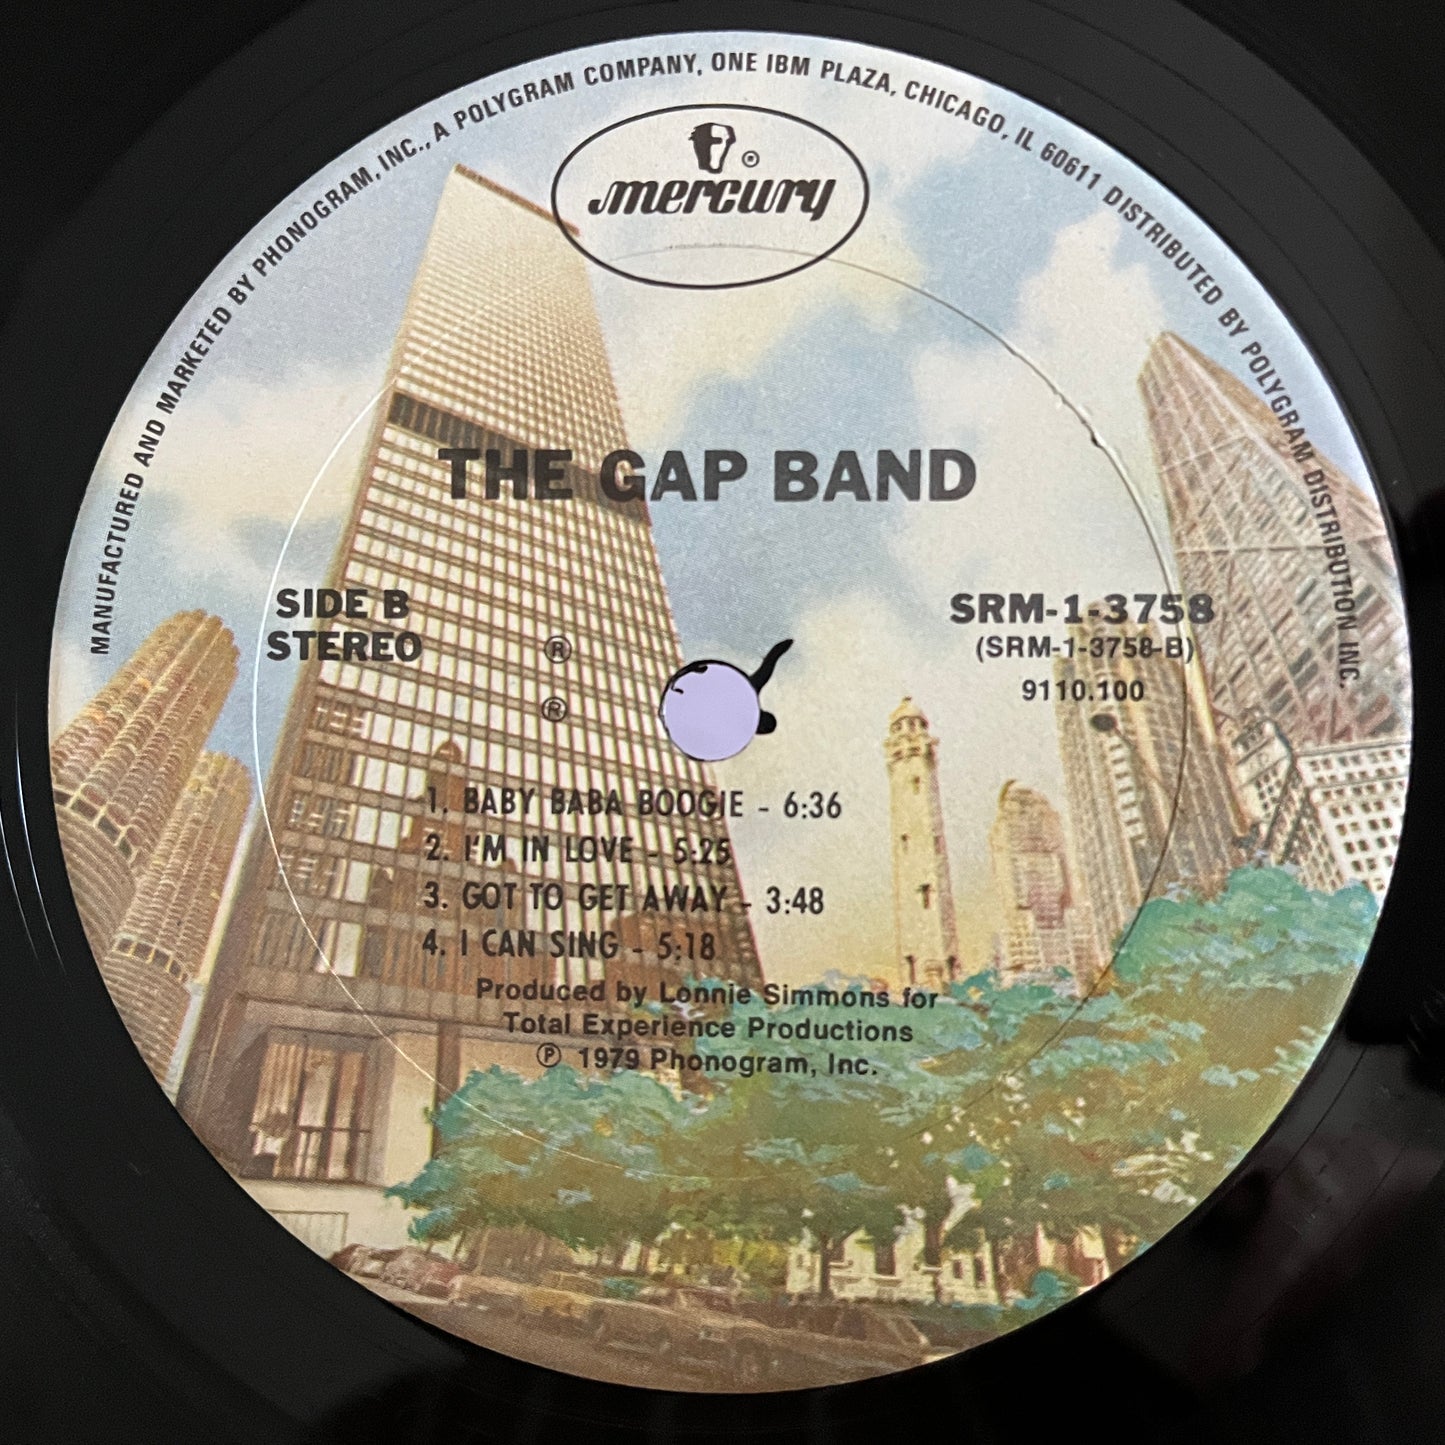 The Gap Band – The Gap Band